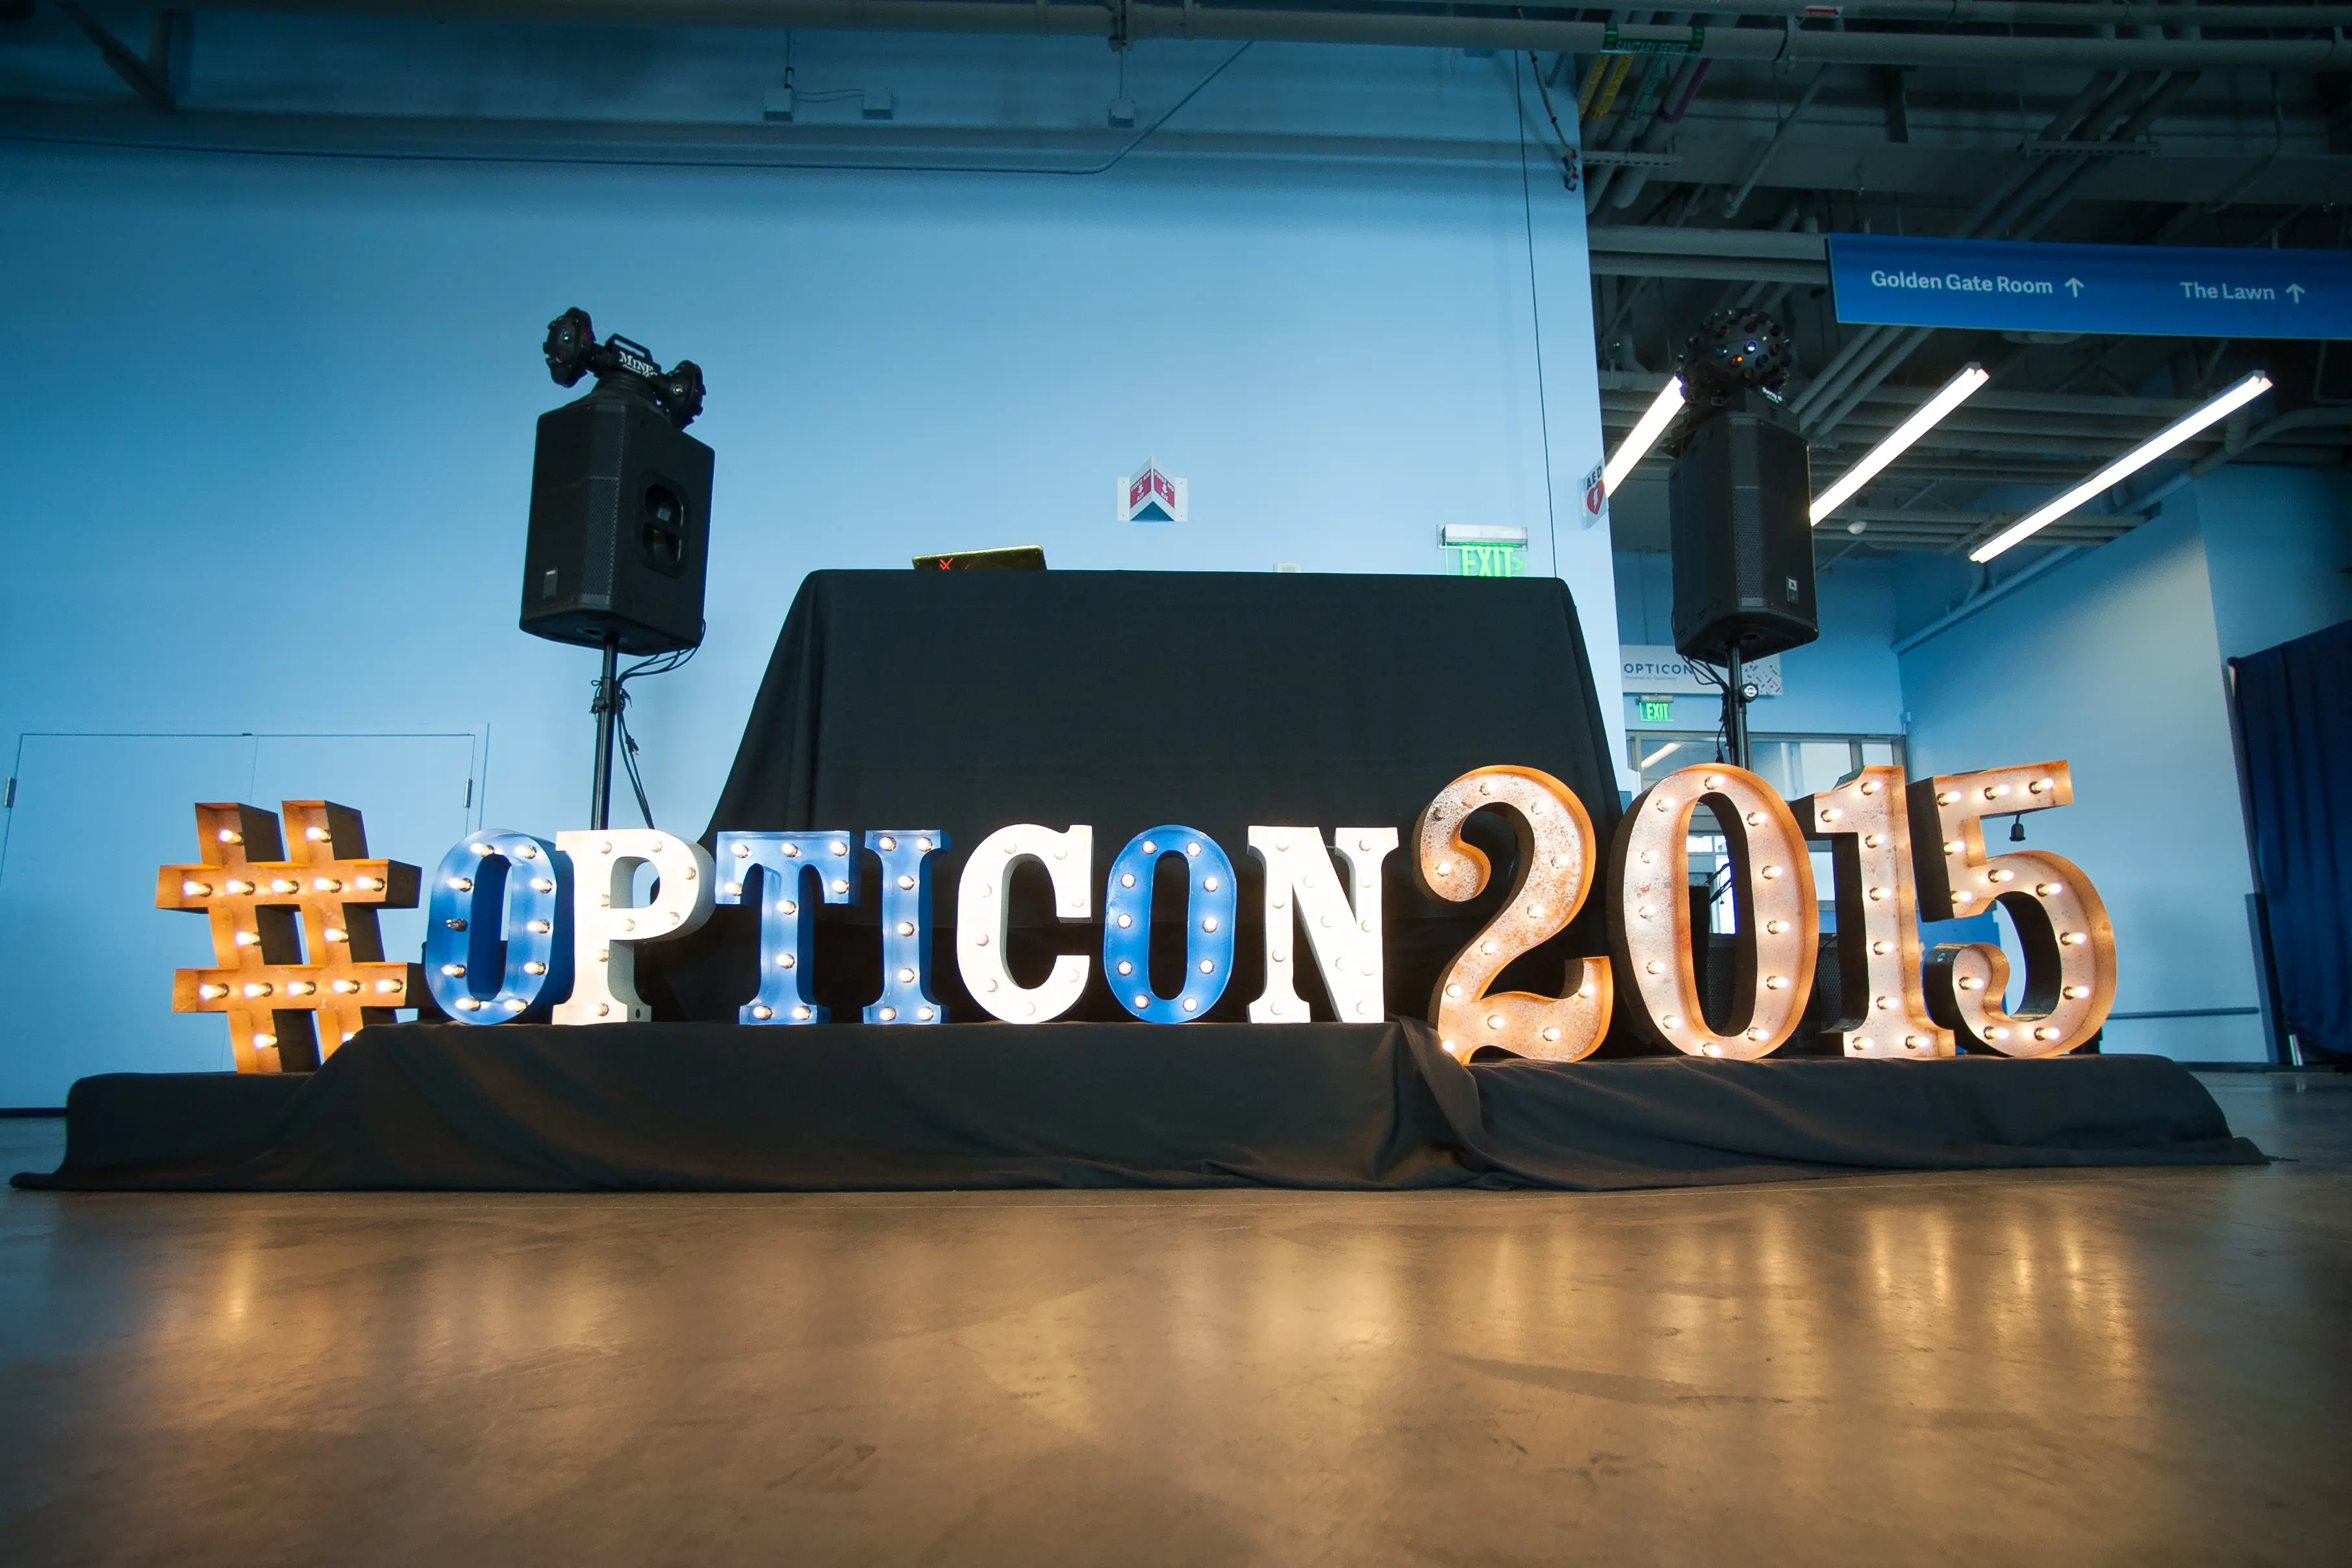 Opticon 2015